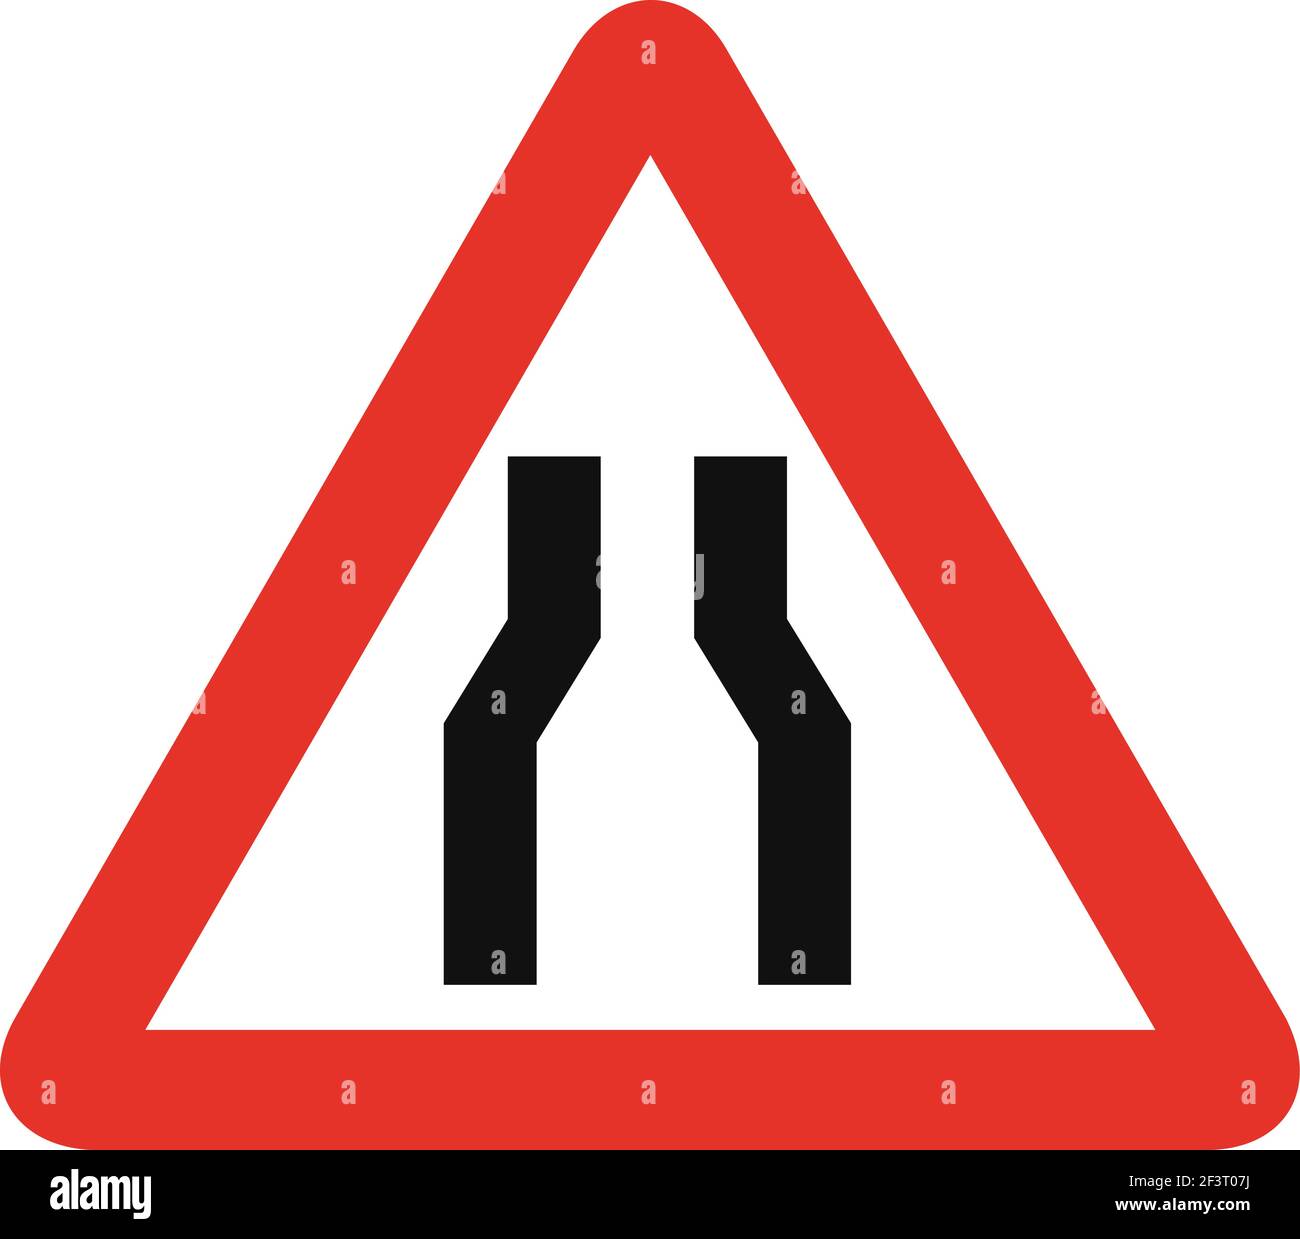 Señal de tráfico triangular en blanco y rojo, aislada sobre fondo blanco. Advertencia de carretera estrecha por delante Ilustración del Vector